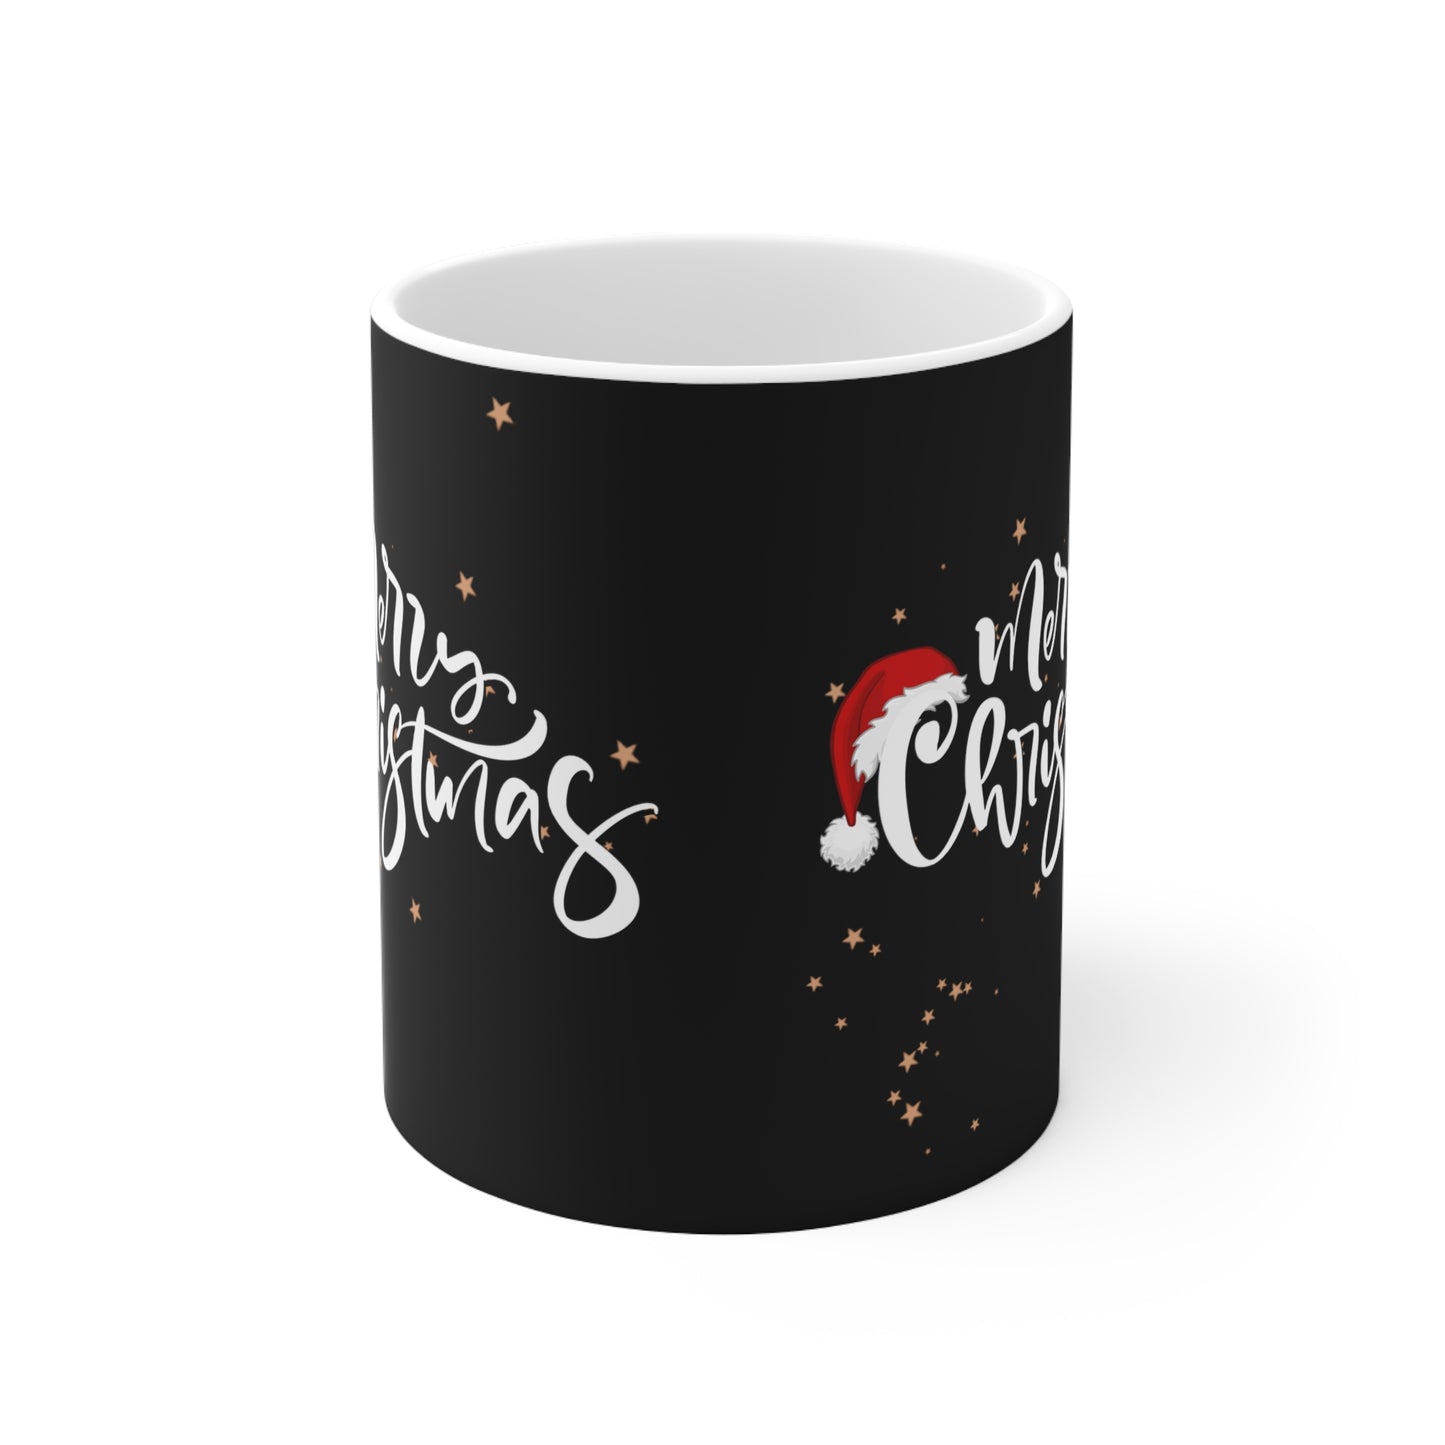 Merry Christmas Ceramic Mug 11oz